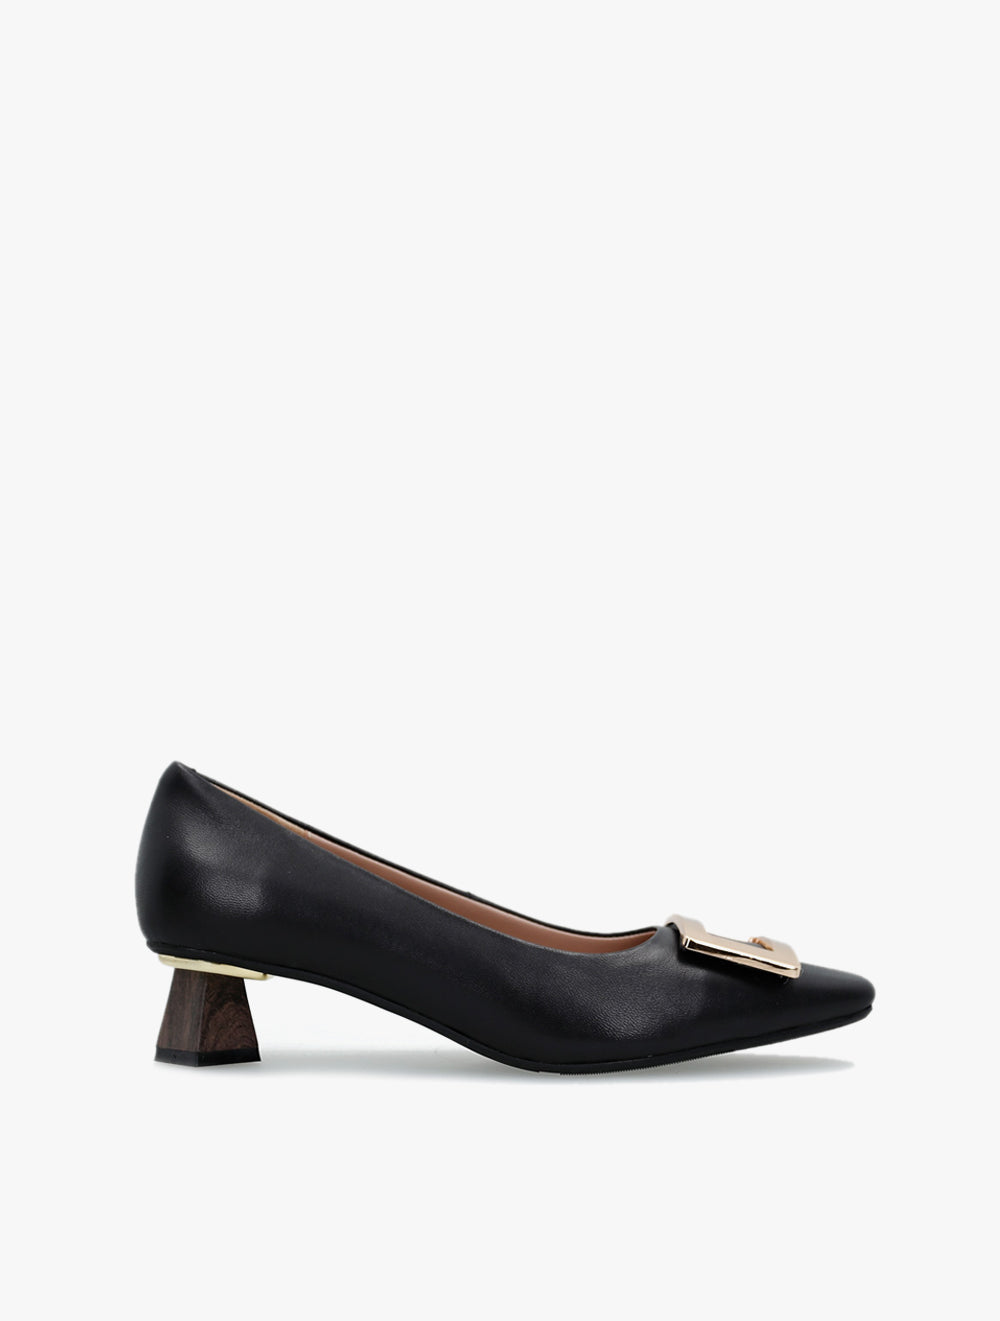 GRIPZ
S2306SarahK(1902-2) Low heels